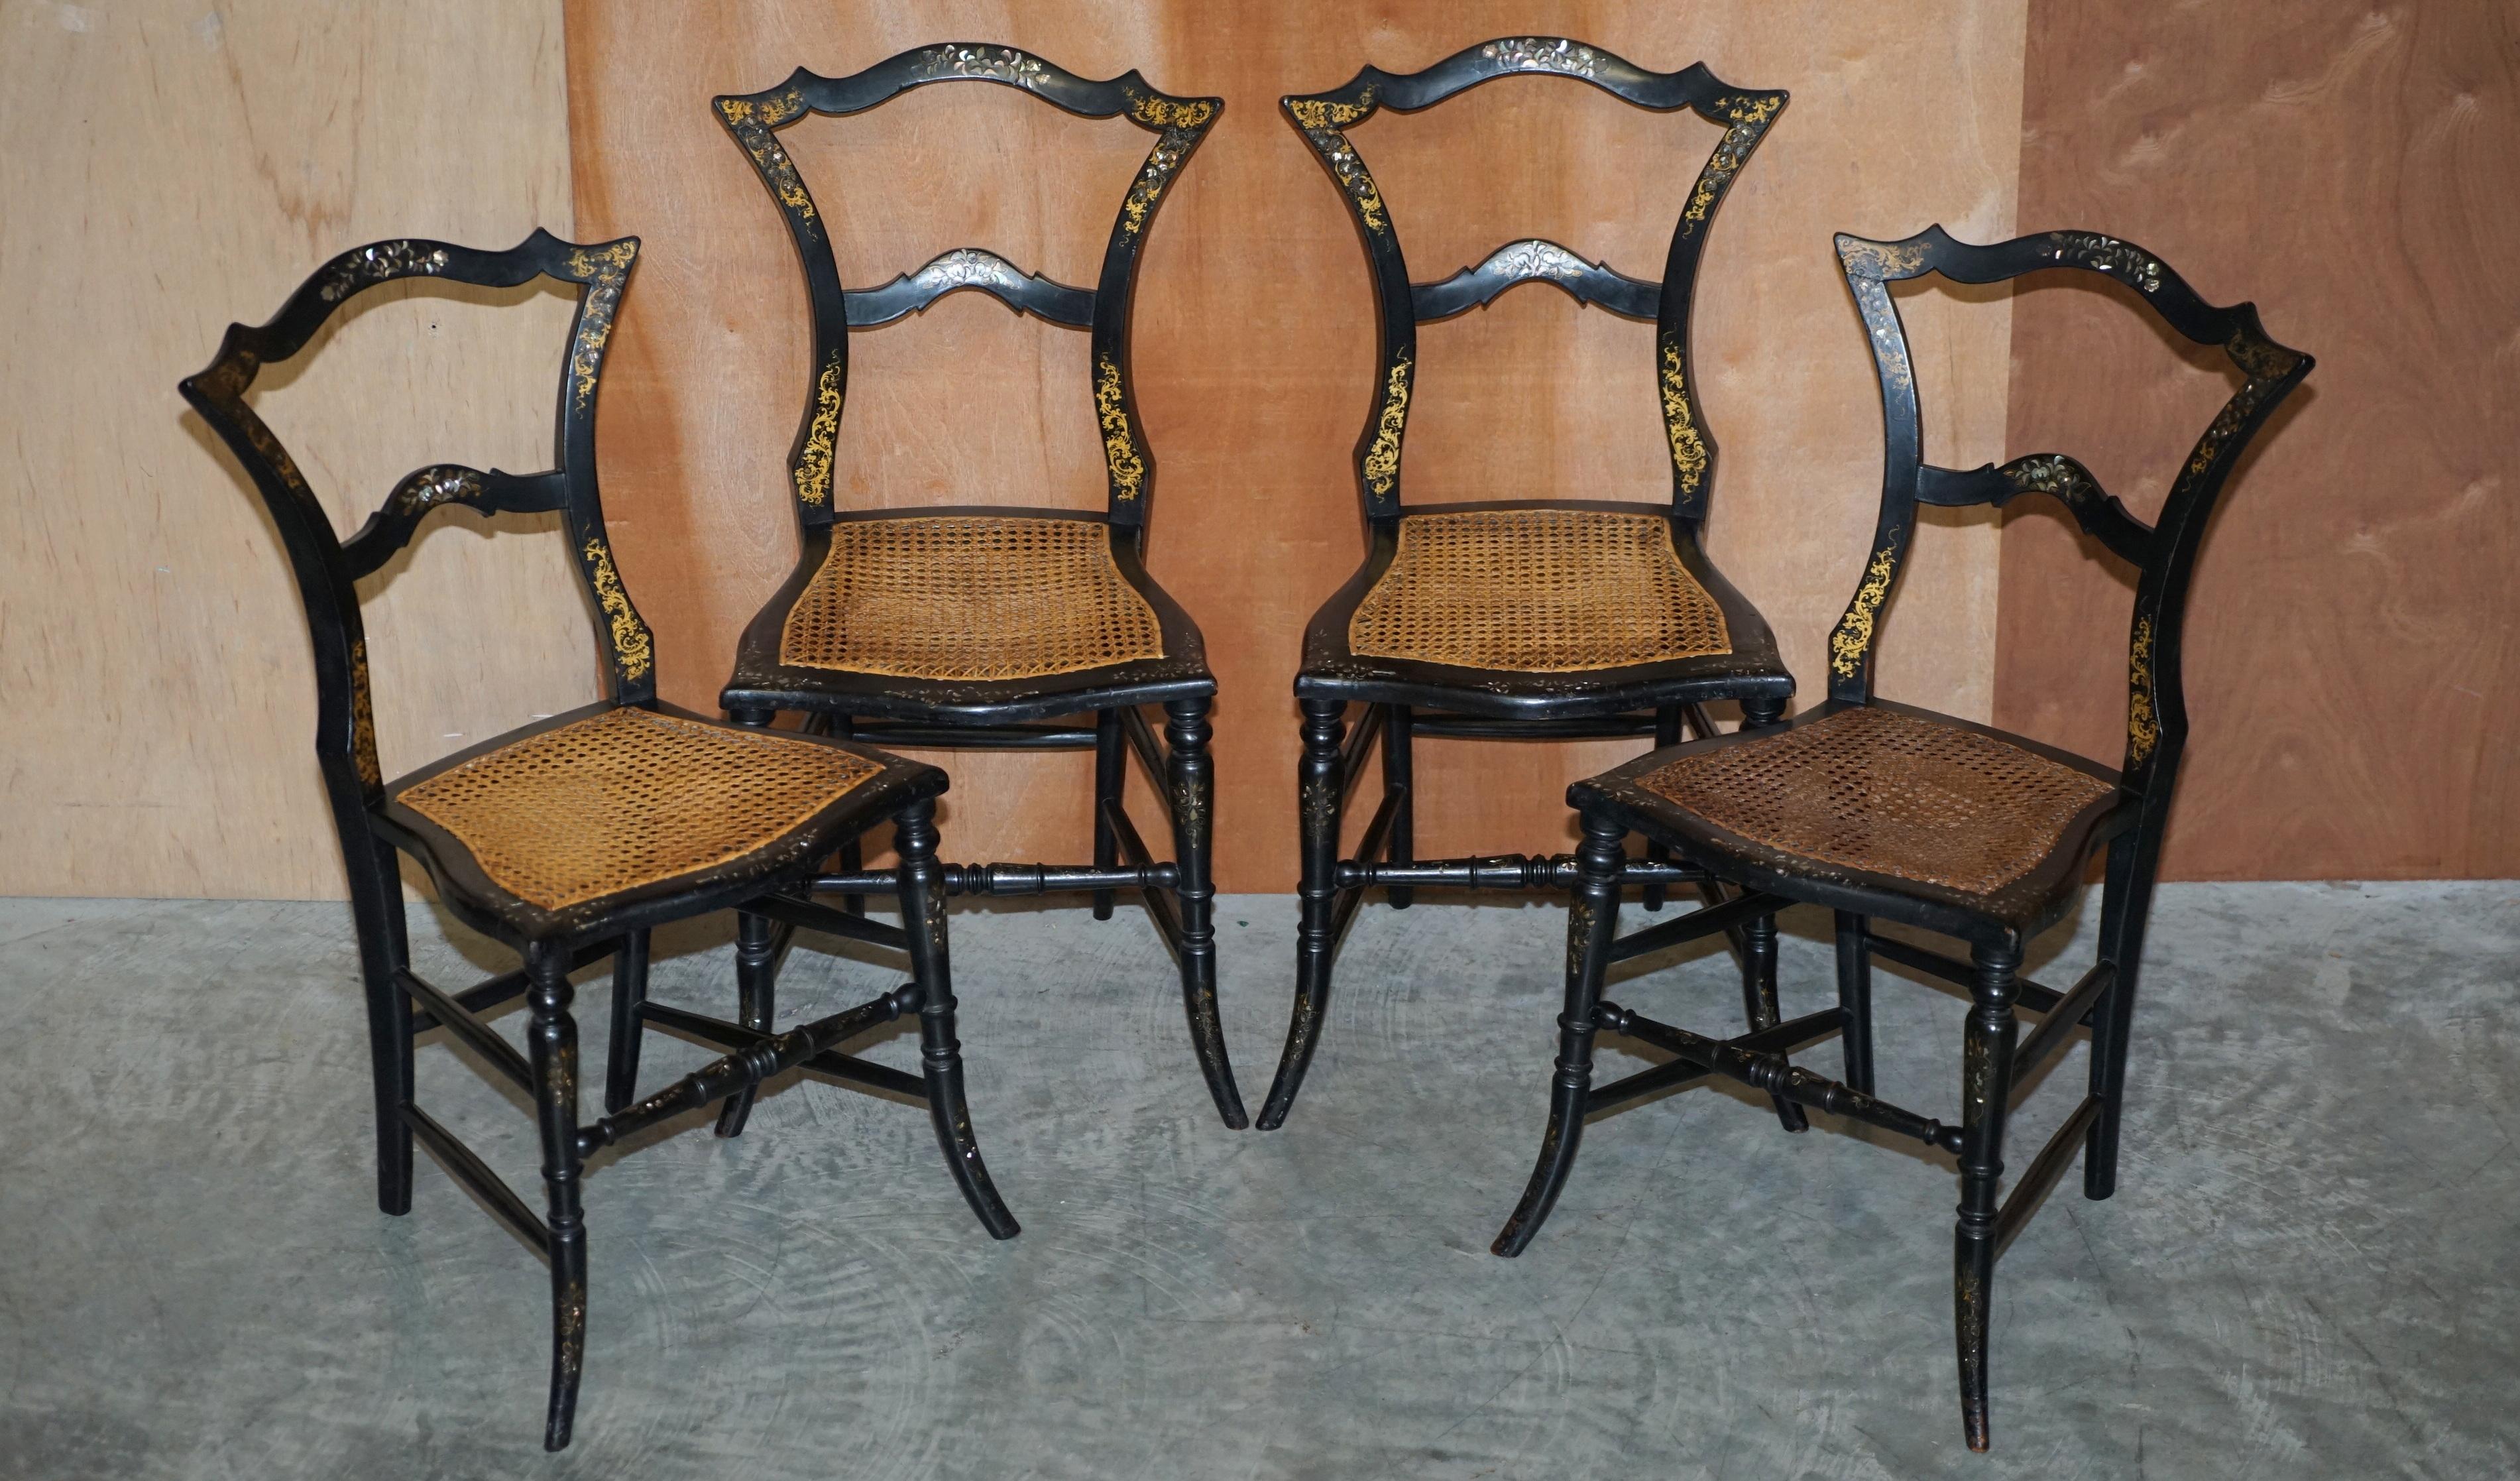 Wir freuen uns, Ihnen diese schöne Garnitur von originalen Regency-Stühlen (ca. 1810-1820) aus Ebenholz mit Perlmutt-Intarsien zum Kauf anbieten zu können

Eine sehr gut aussehende, gut gemachte und dekorative Stuhlgruppe. In Wahrheit habe ich